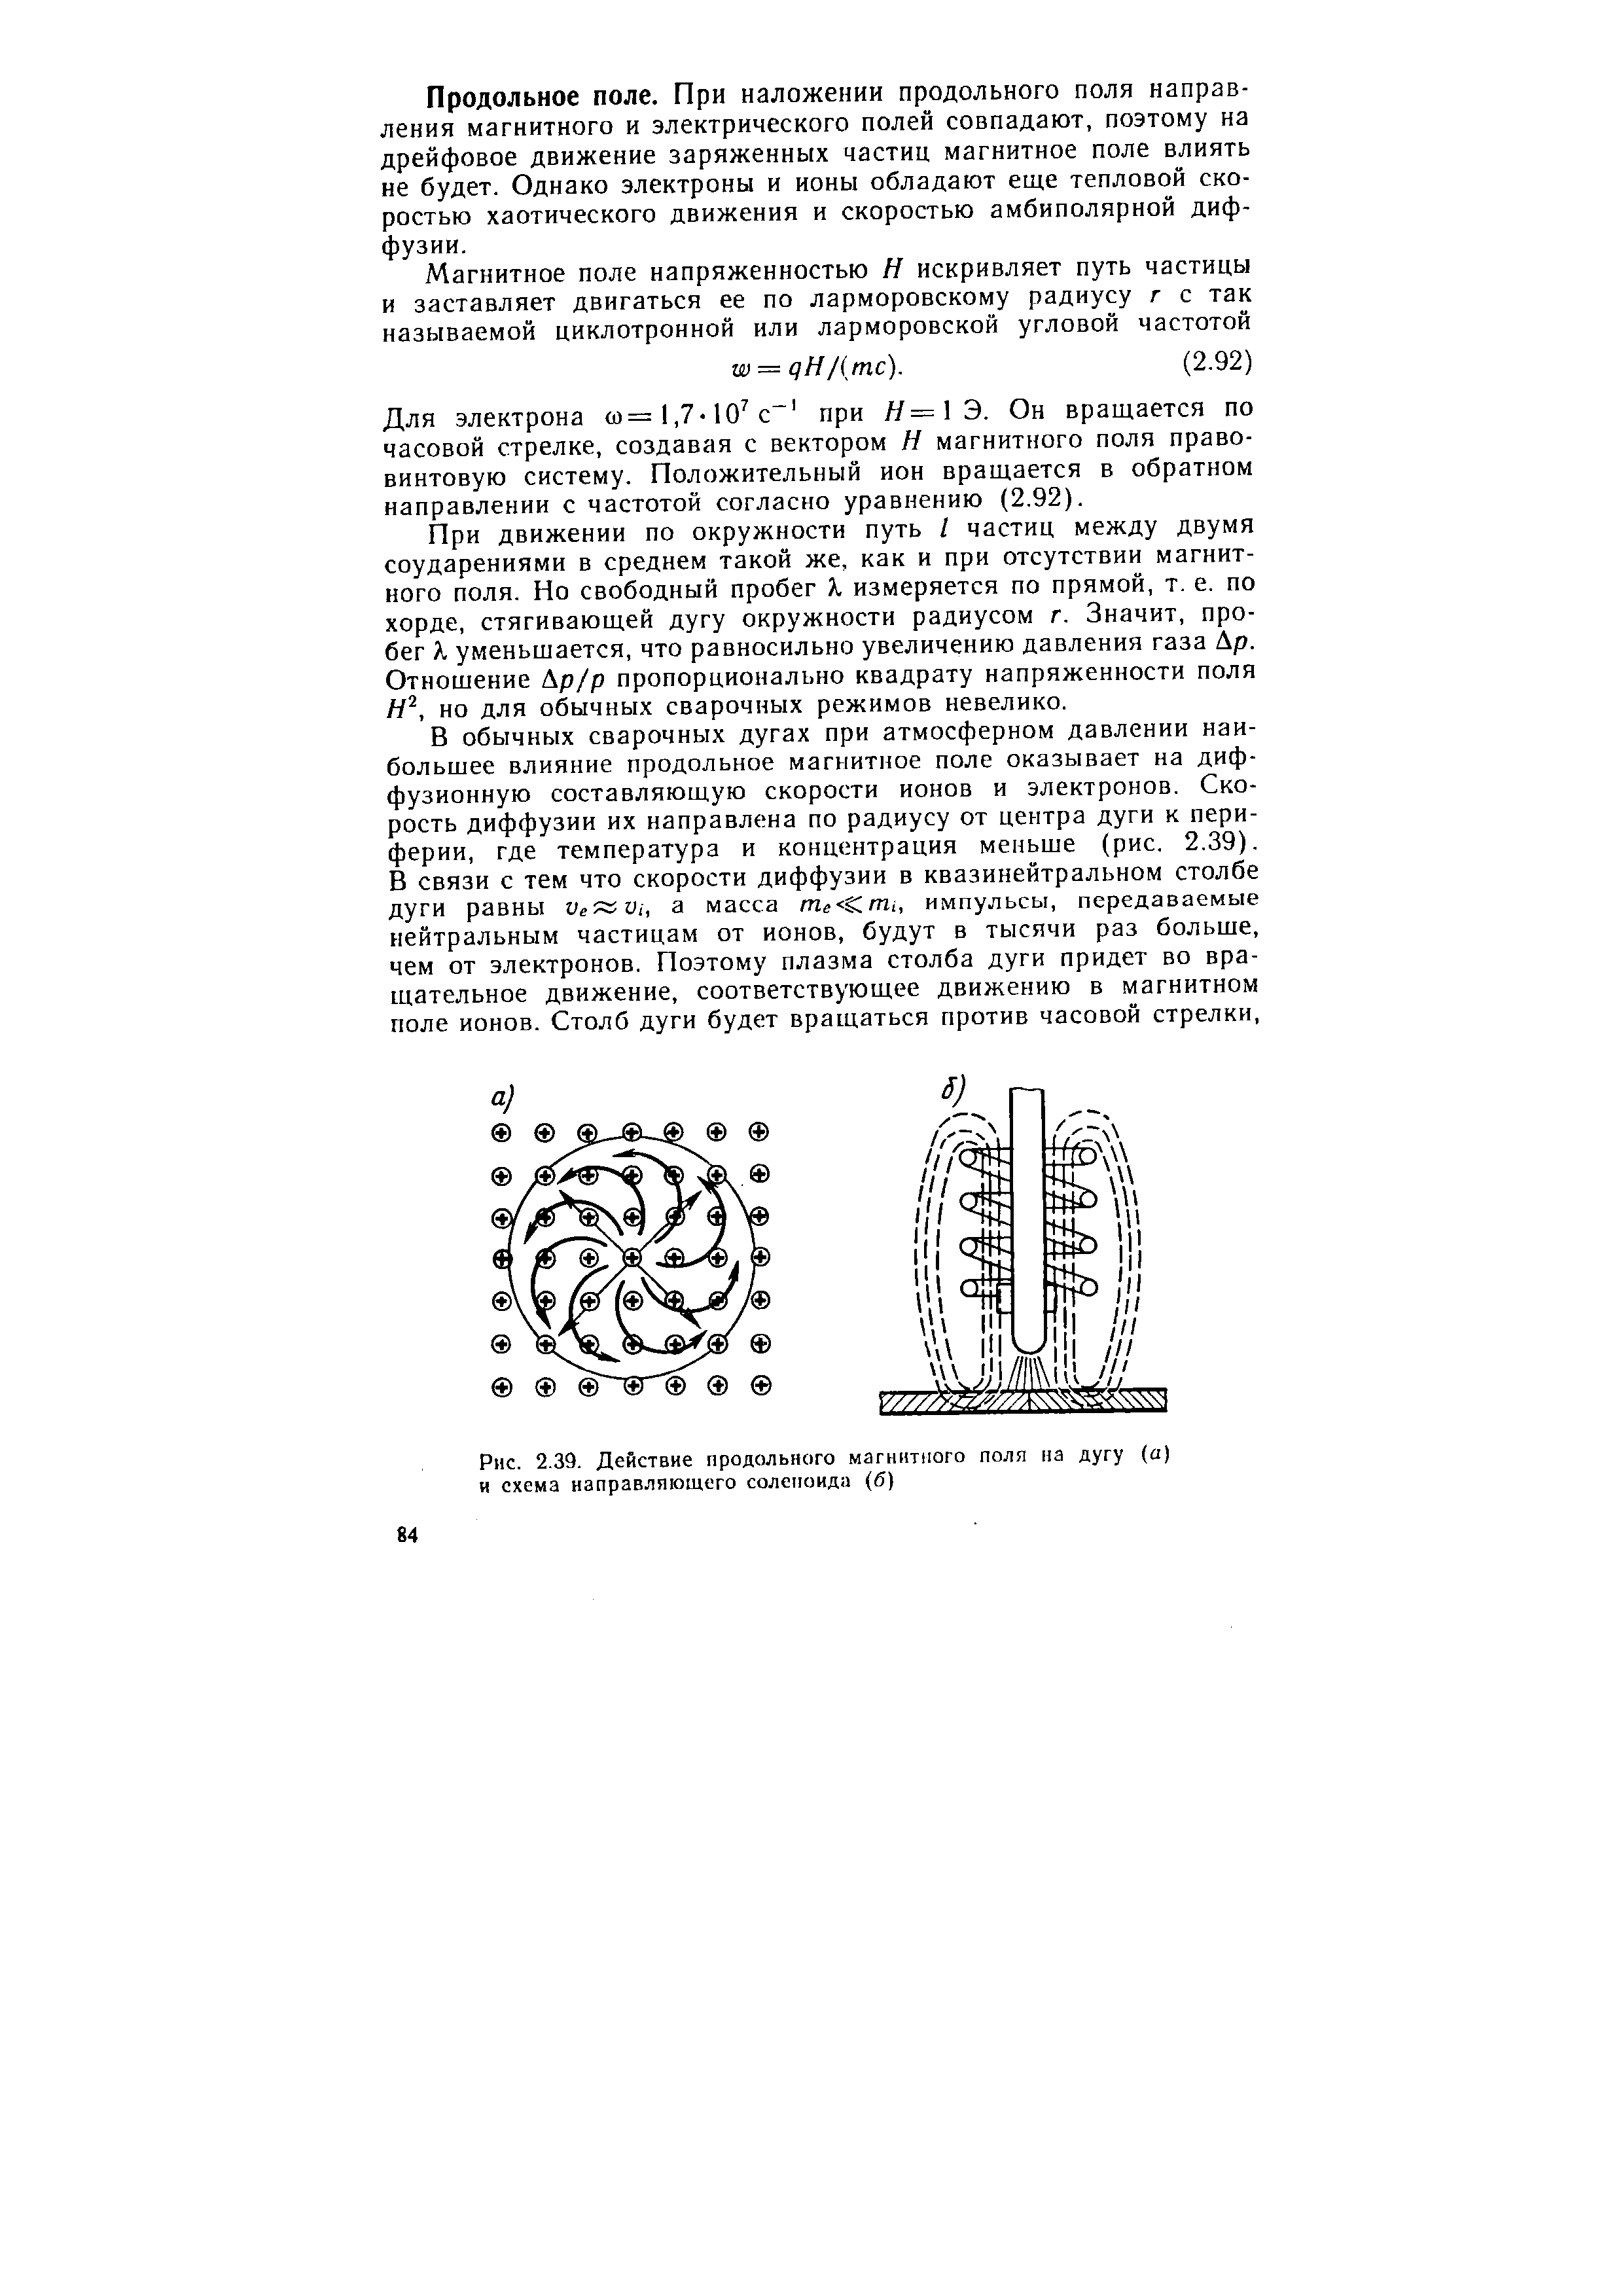 Рис. 2.39. Действие продольного магннпюго поля на дугу (а) и схема направляющего соленоида (б)
